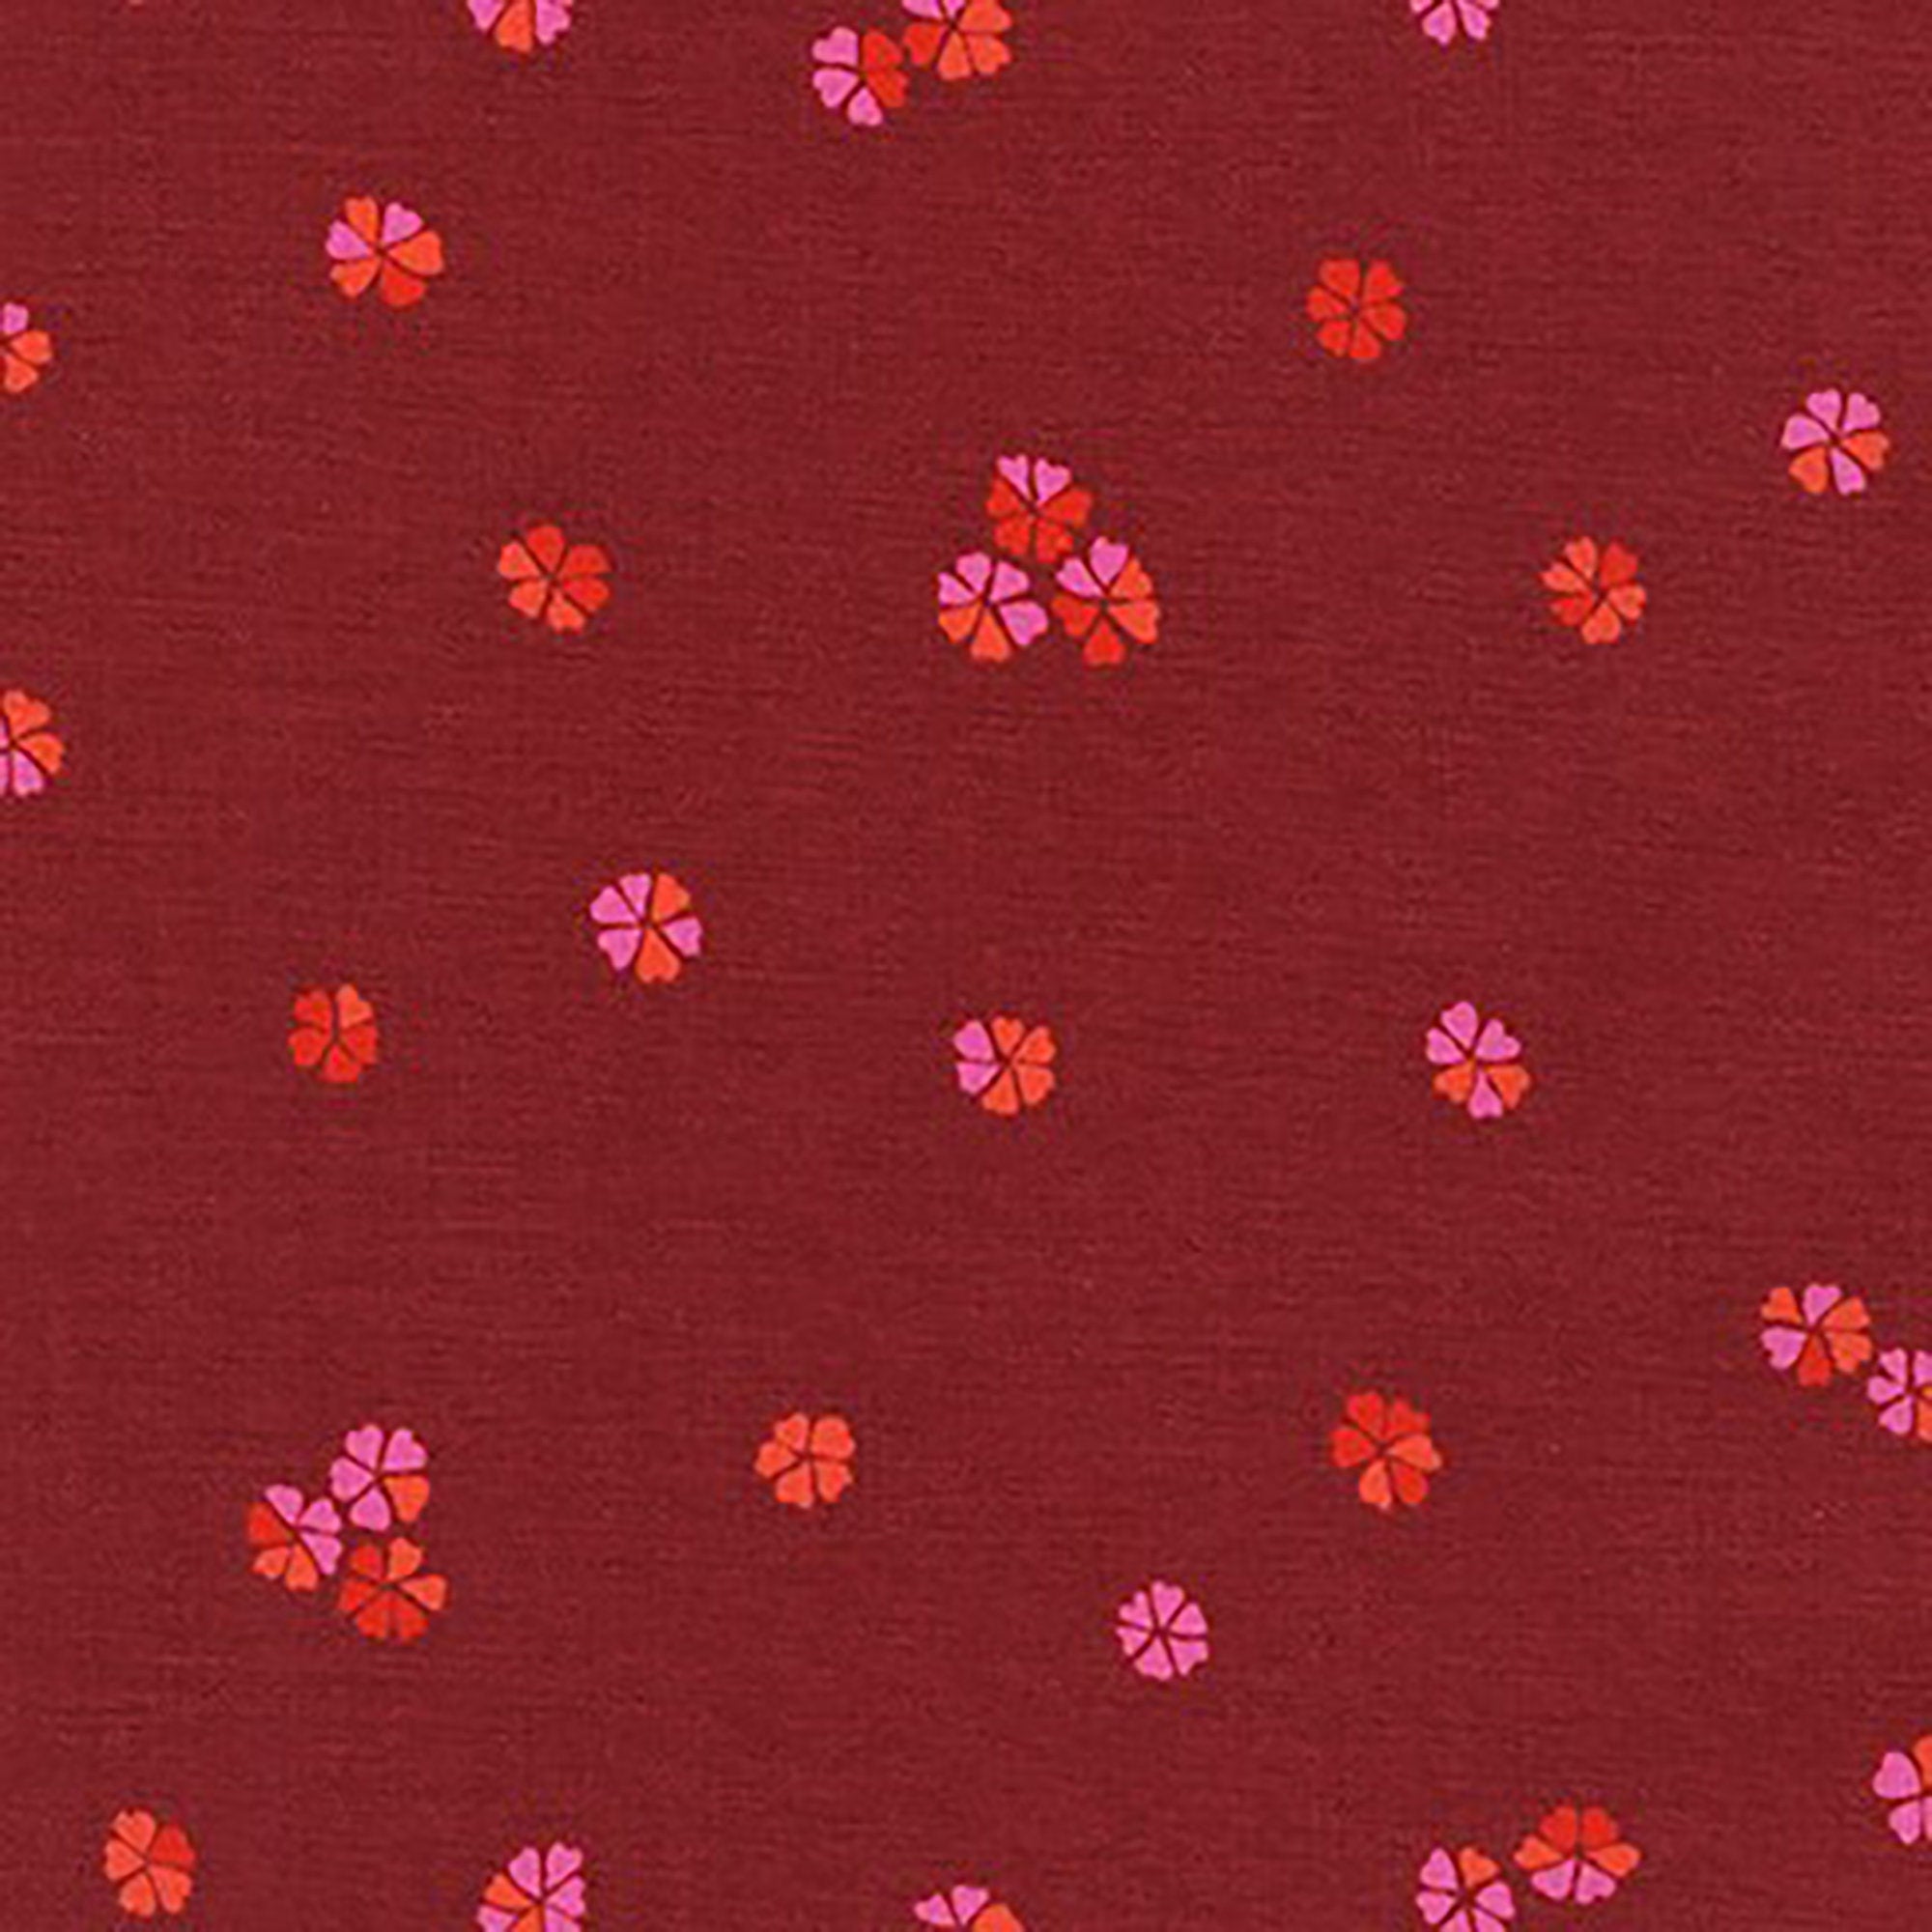 Cheery Blossom - Mini Blossoms Lipstick Fabric